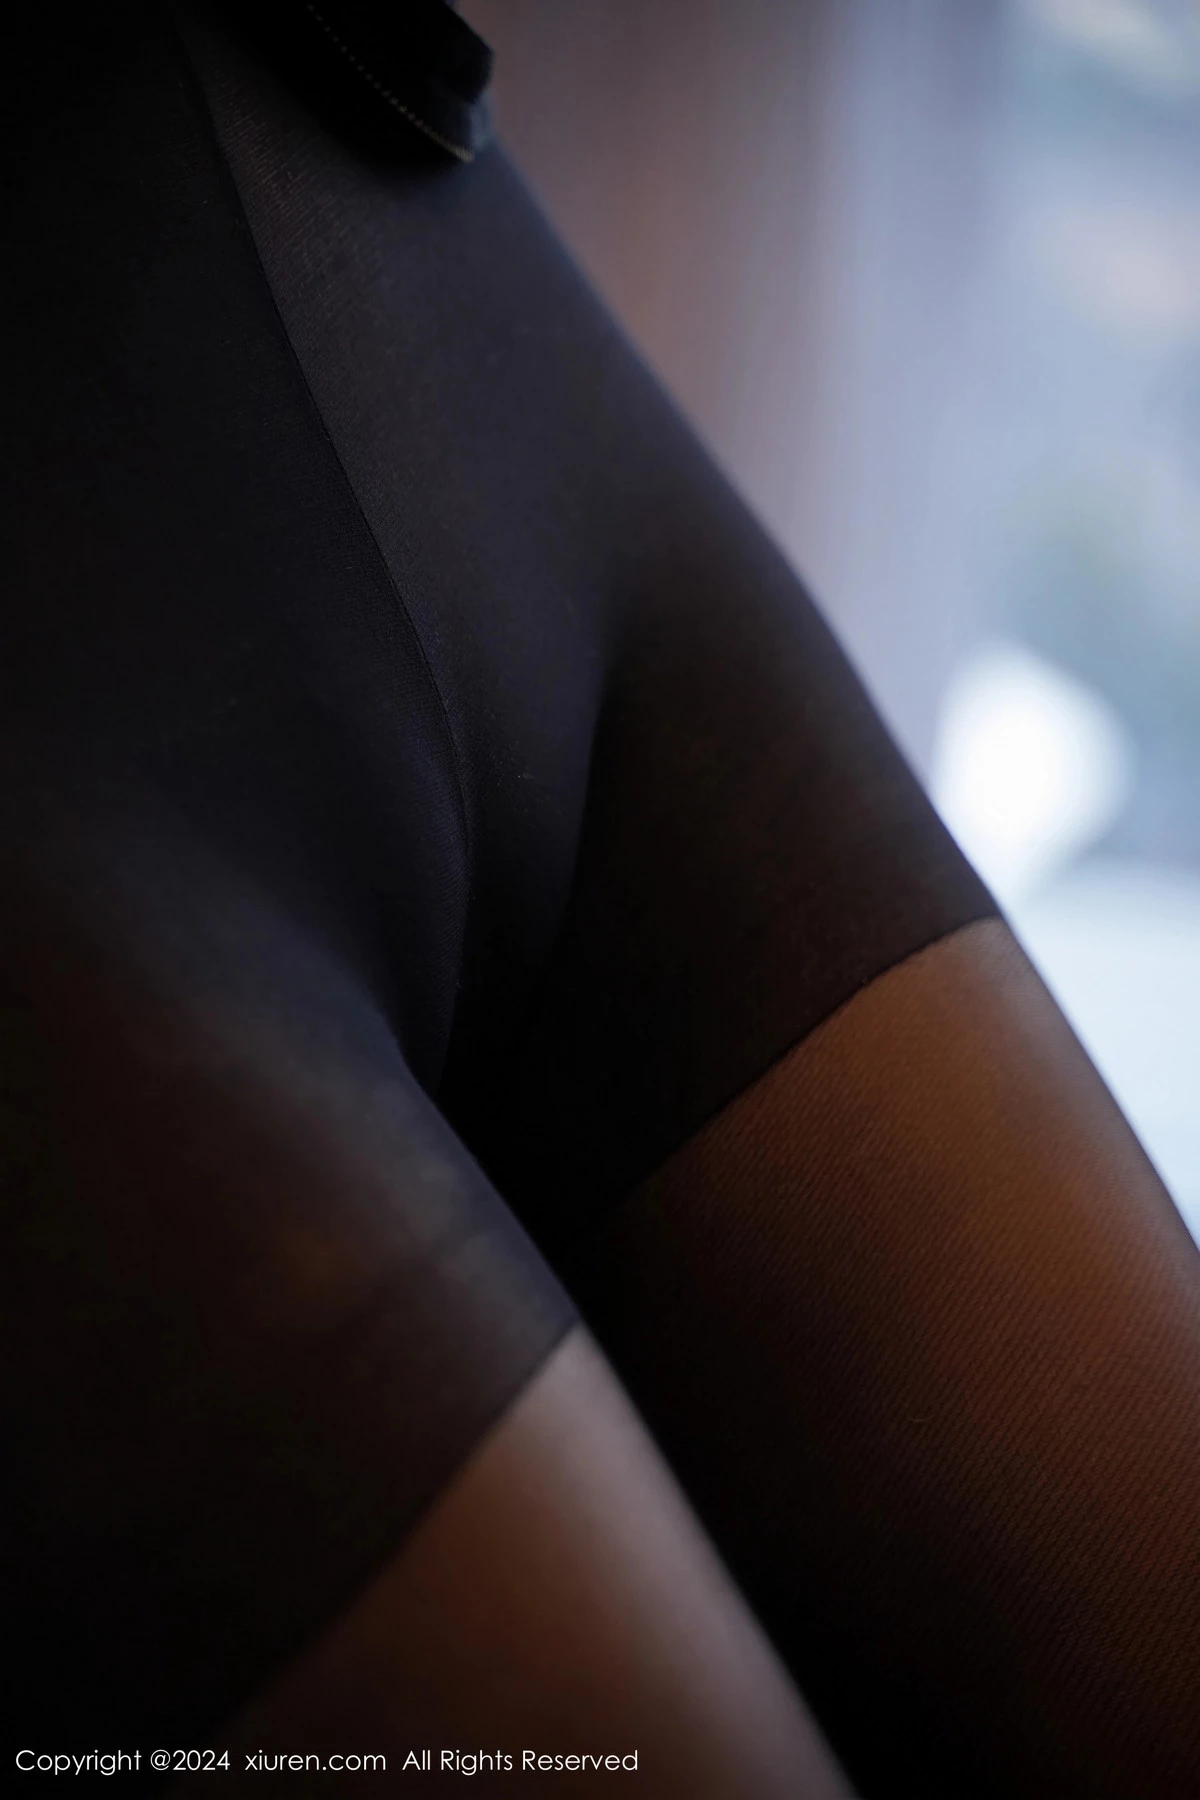 [XiuRen秀人网]第8170期_模特蕾蕾醒了没性感黑色收身服饰配超薄黑丝秀丰腴身材诱惑写真80P